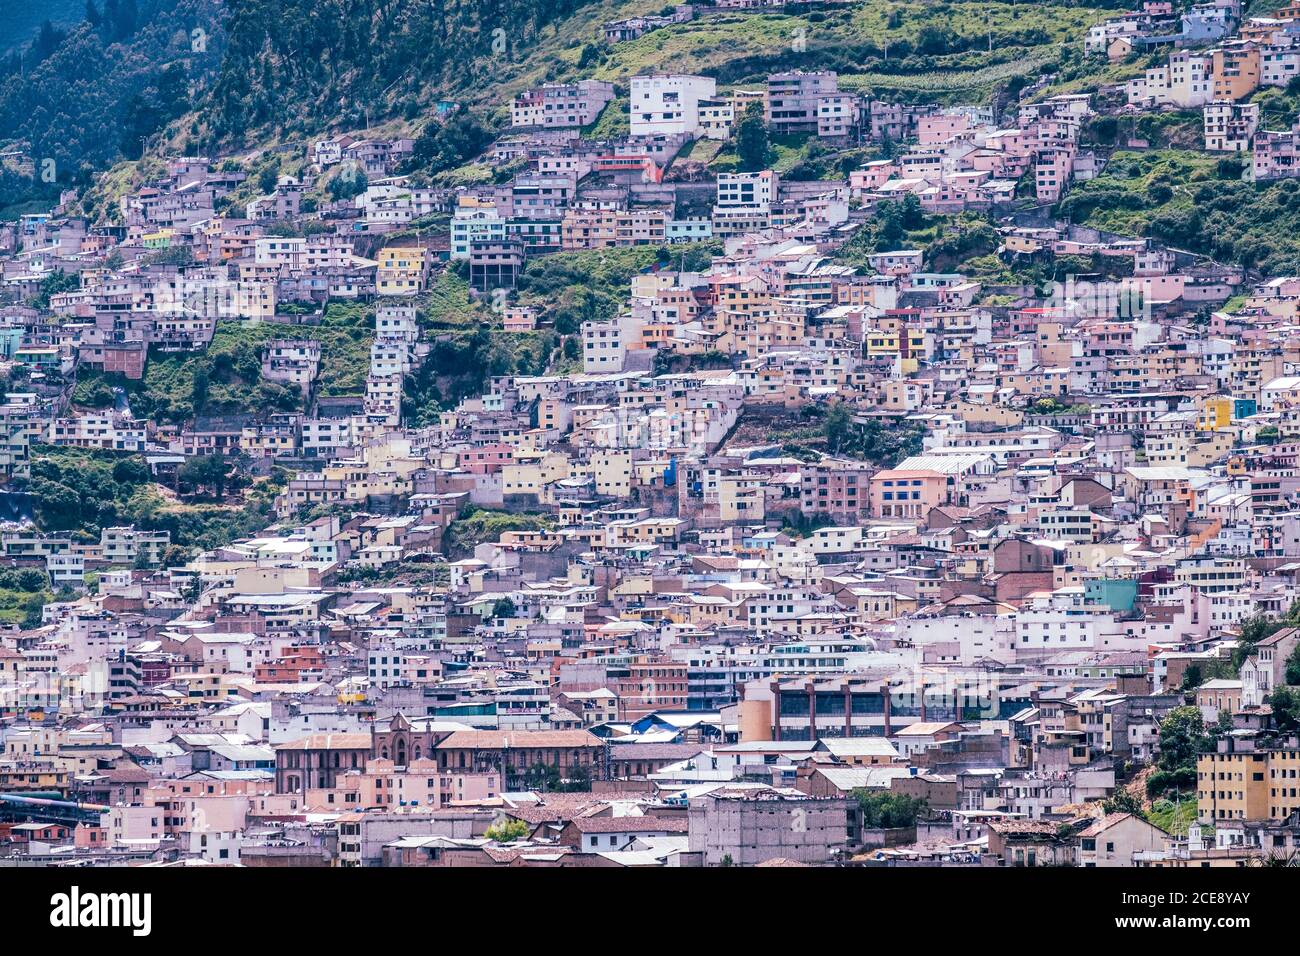 Ein Blick auf die dicht besiedelte Stadt Quito. Stockfoto